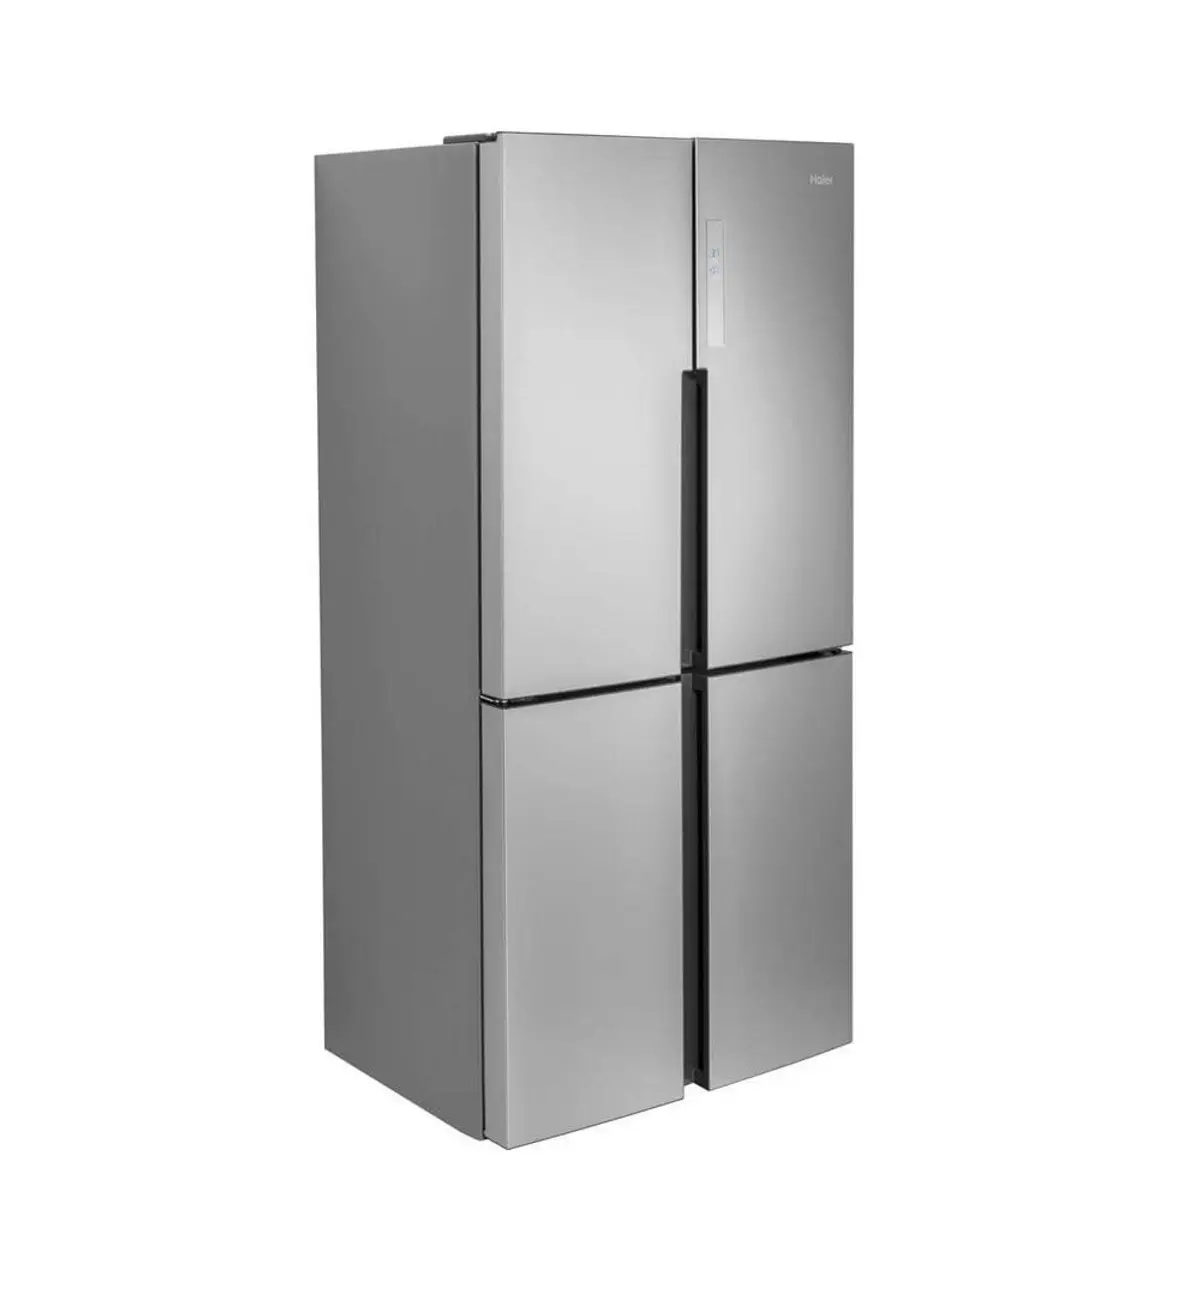 Haier 33 Inch 4 Door Bottom Freezer Quad Door Refrigerator review